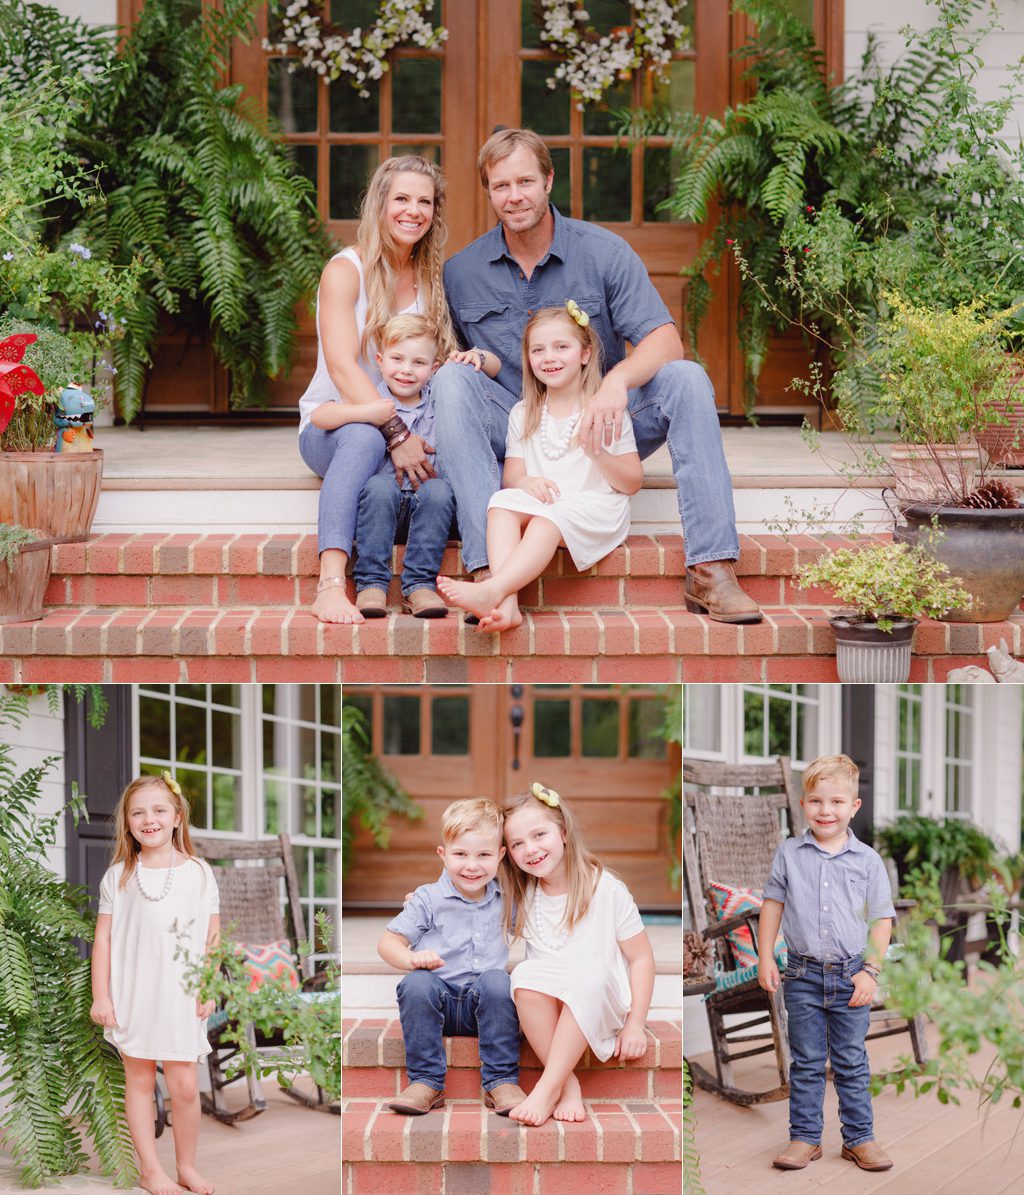 Natural family photography at home near Athens, GA.